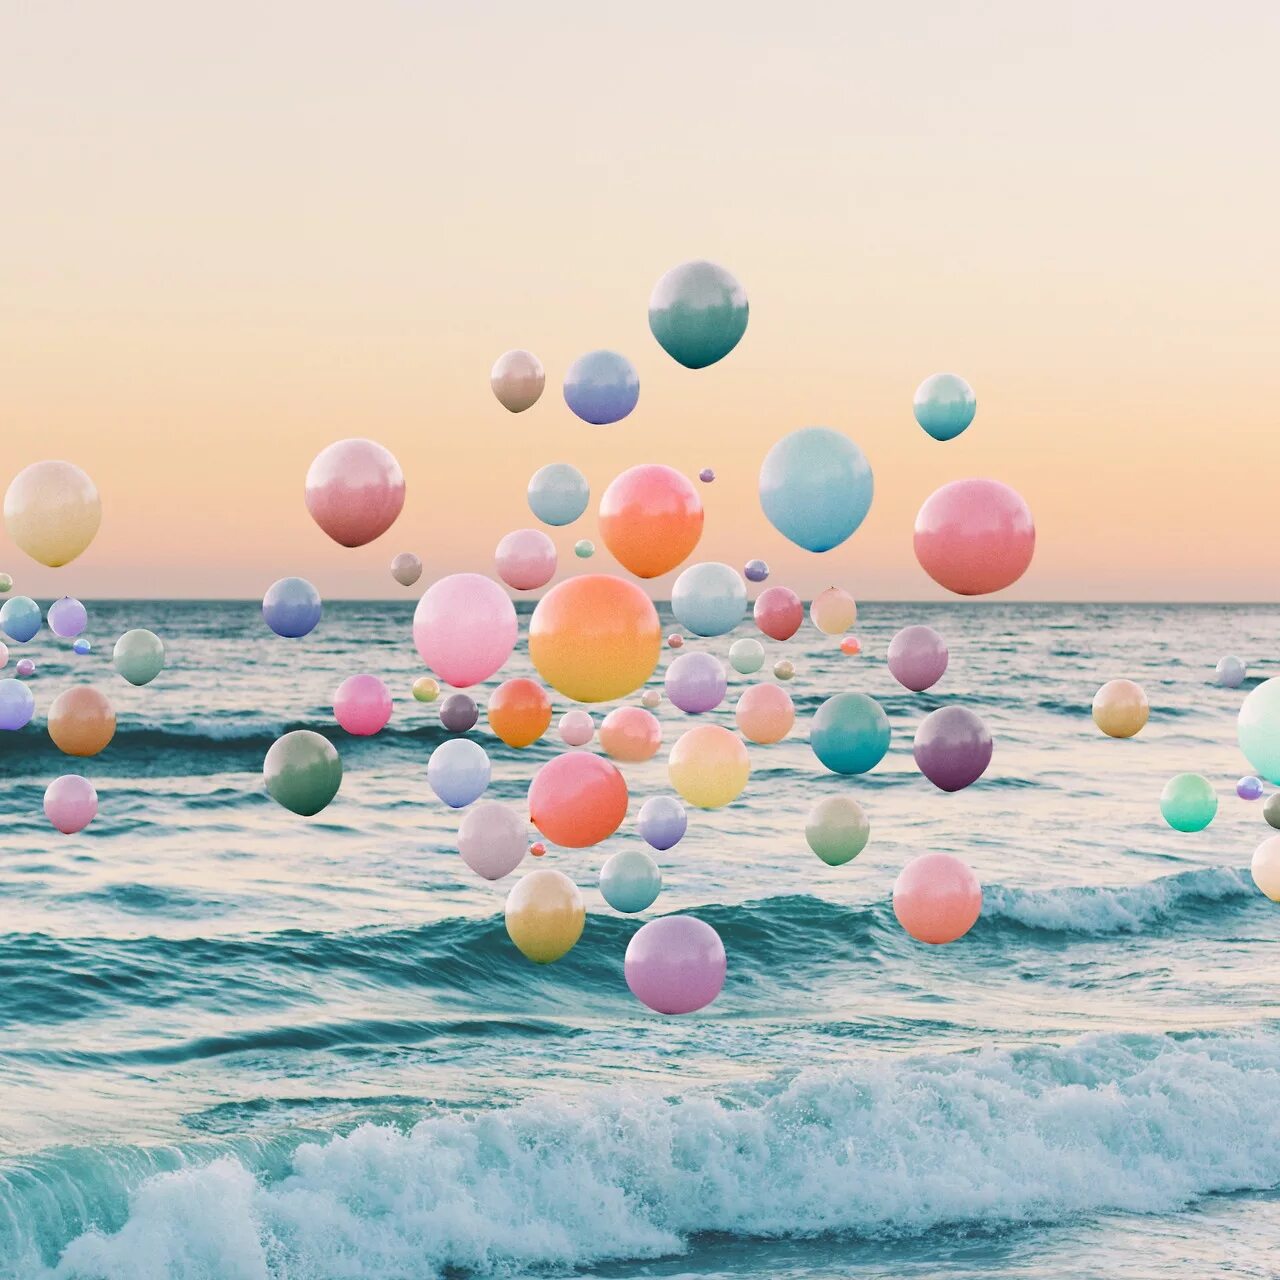 Лето в шаре. С днем рождения море. Воздушные шары на фоне моря. Море шаров. С днем рождения стильно.